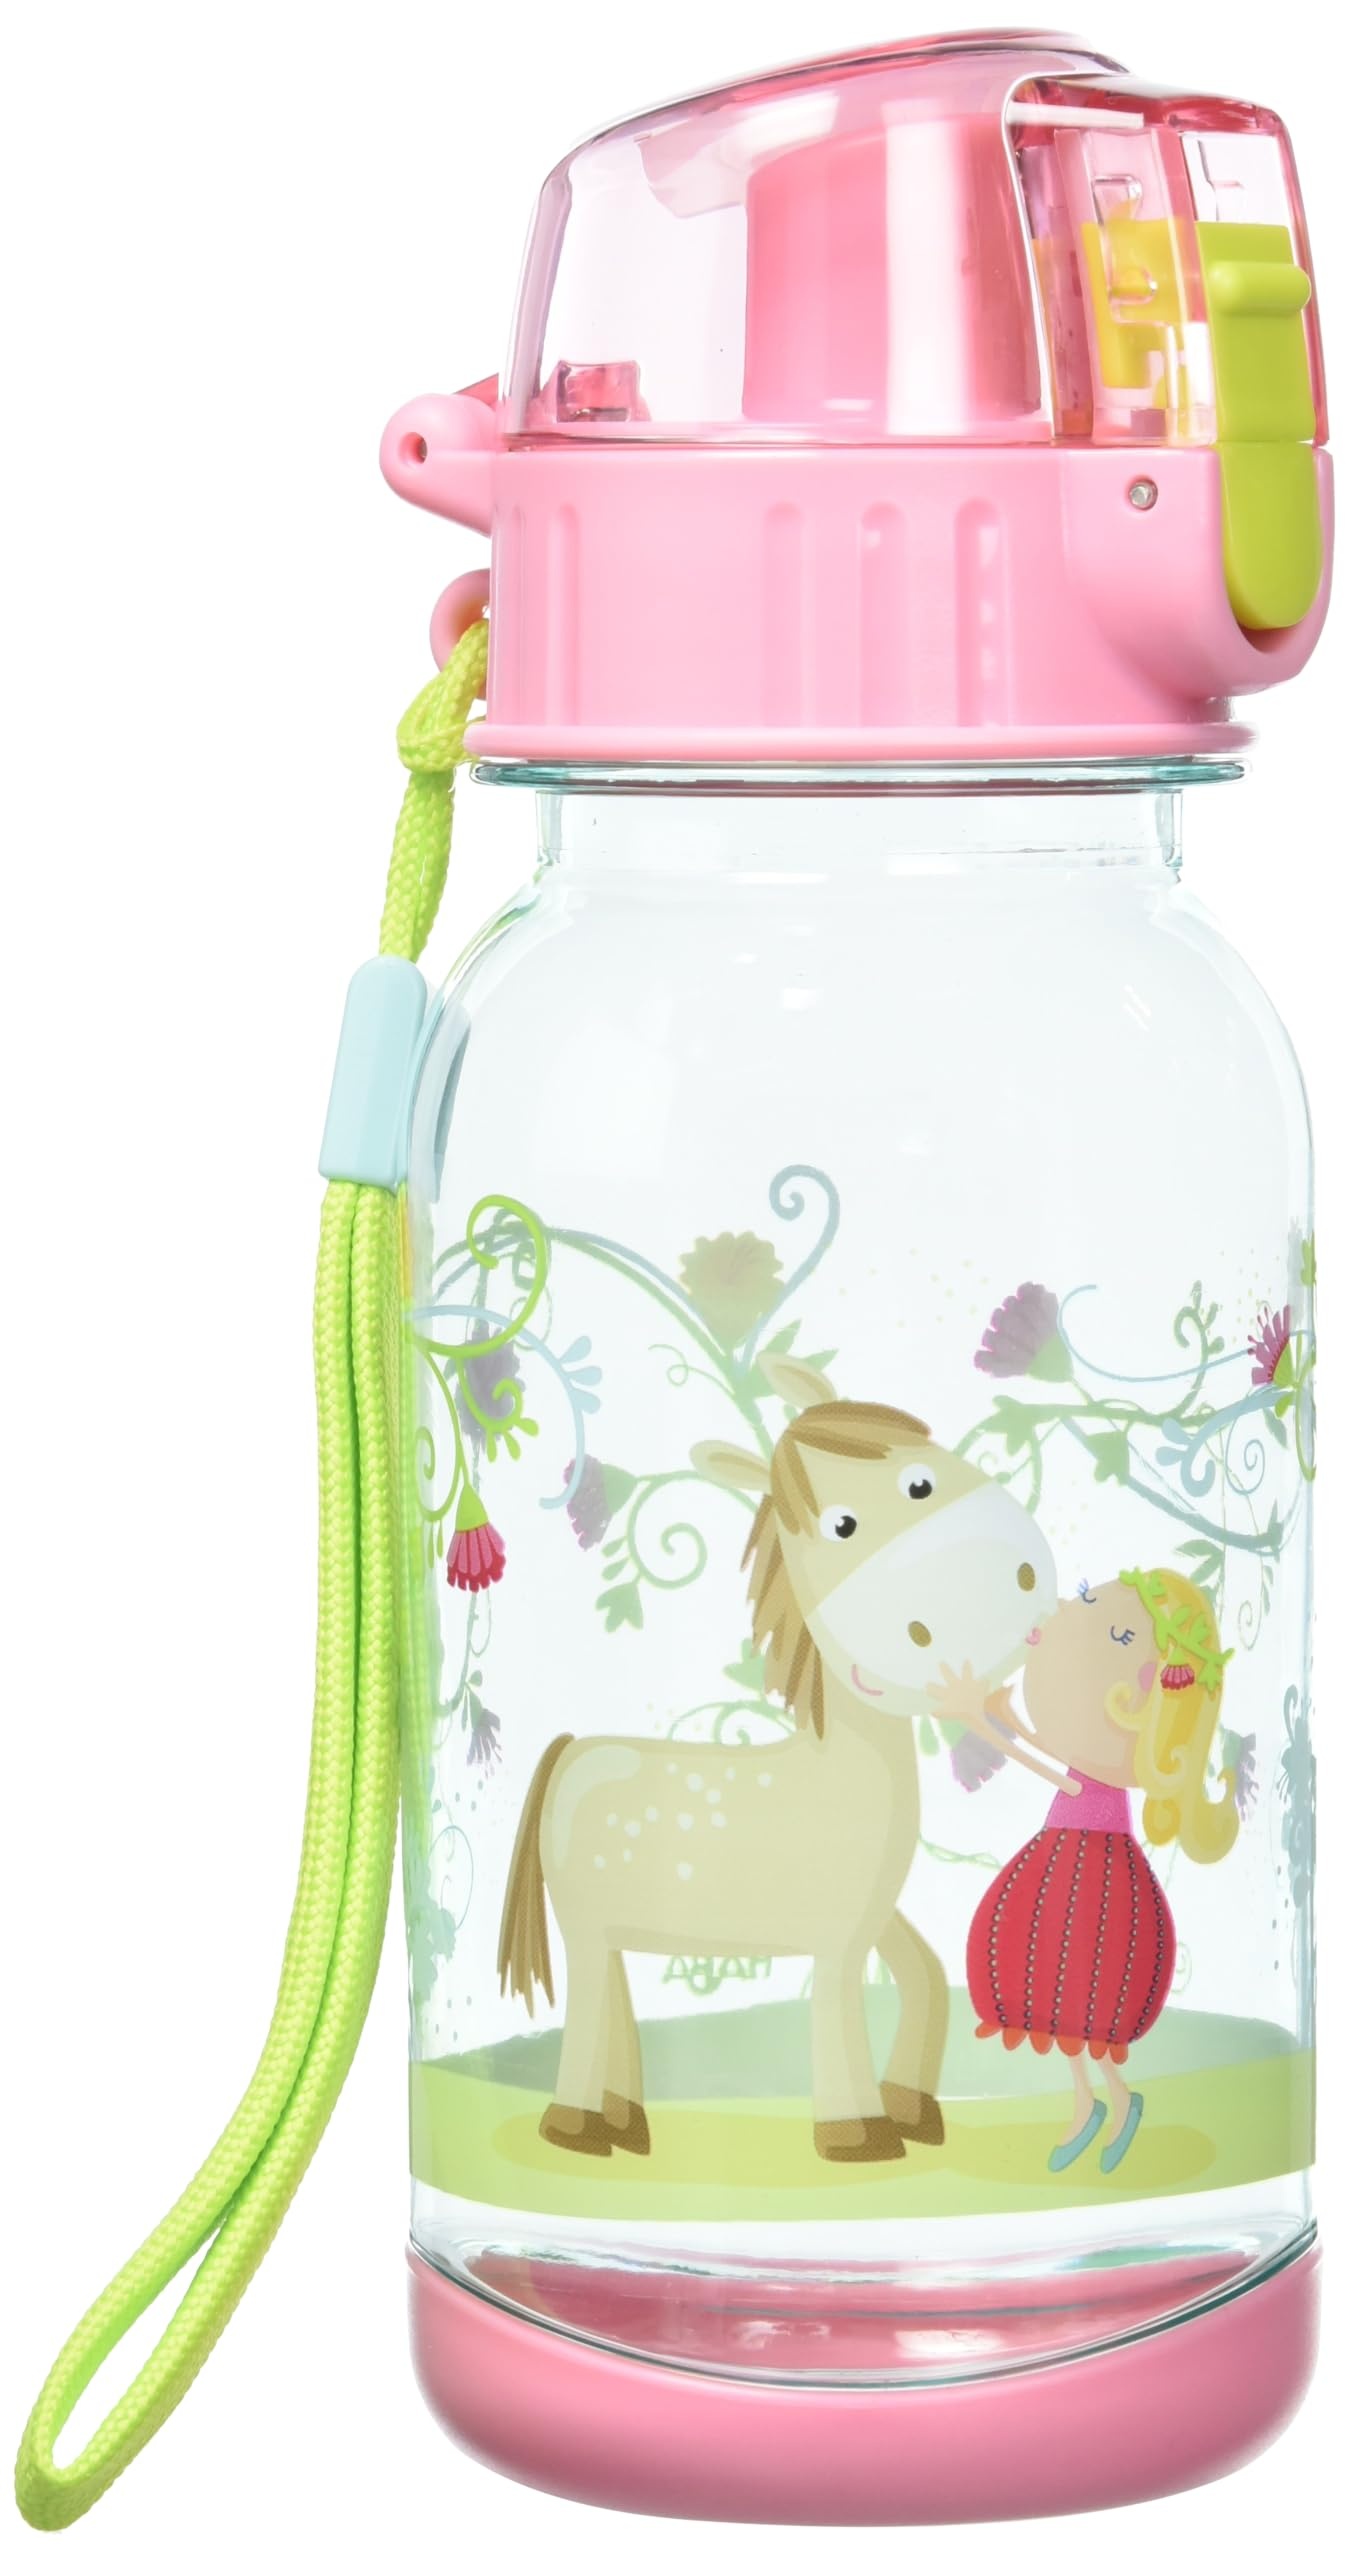 HABA 304485 - Trinkflasche Vicki & Pirli, 400ml Kinder-Trinkflasche mit Pferde-Motiv in Rosa für Kindergarten oder Schule, bpa freier Kunststoff, spülmaschinenfest